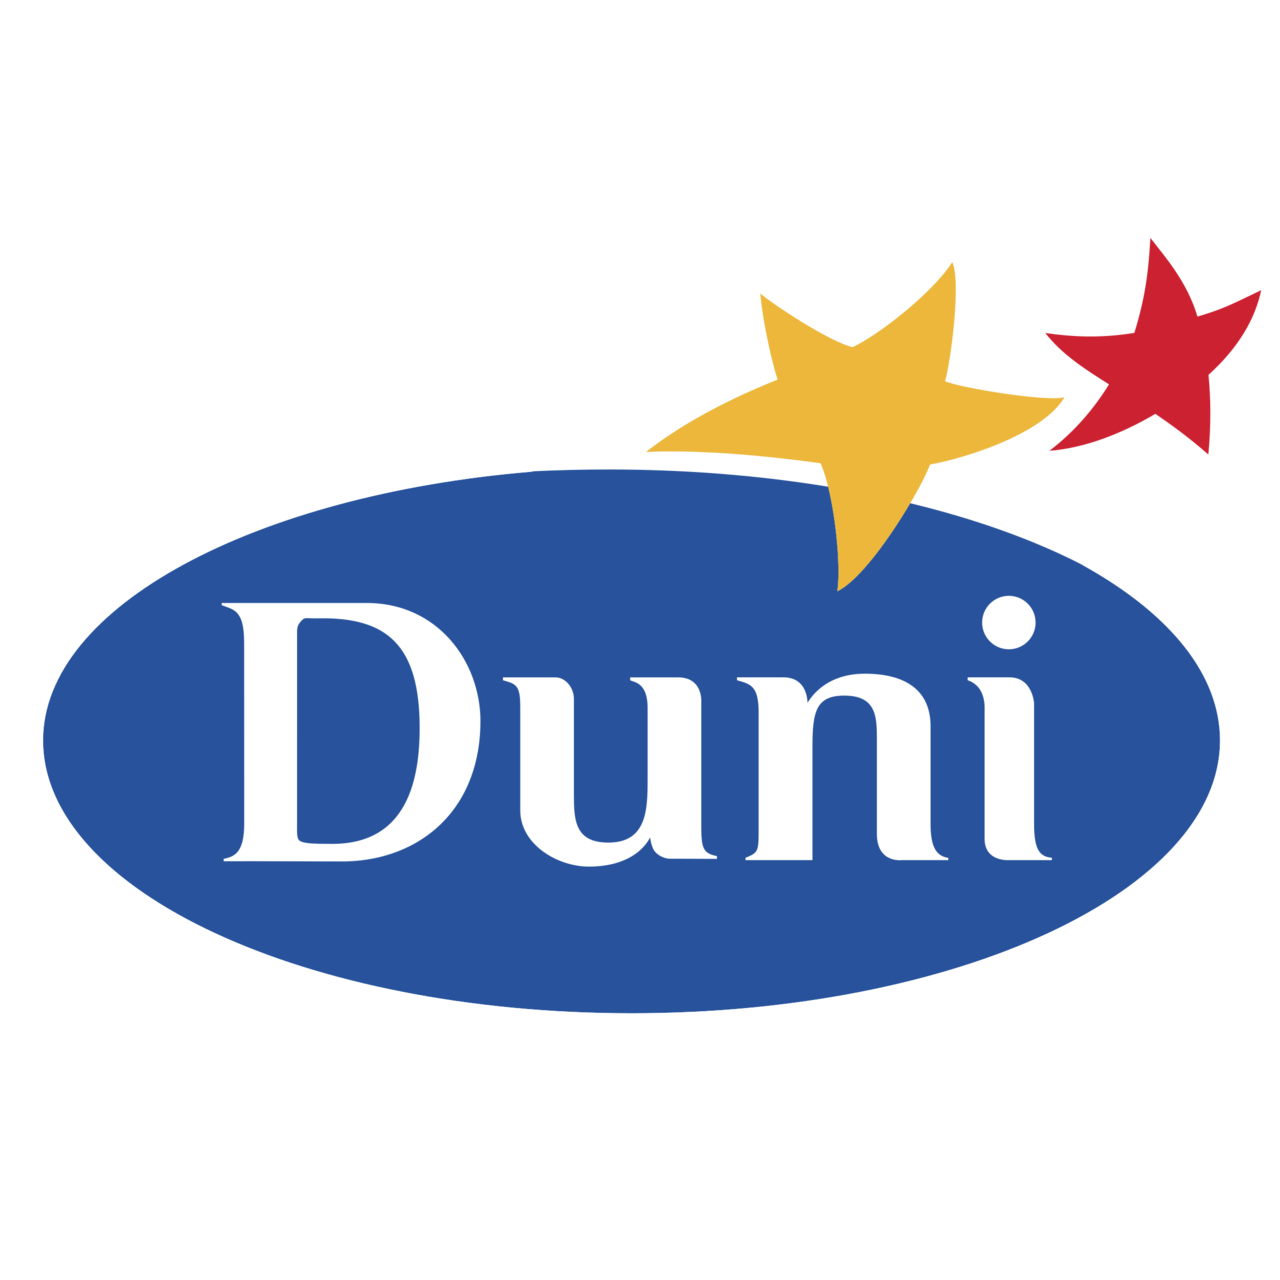 duni